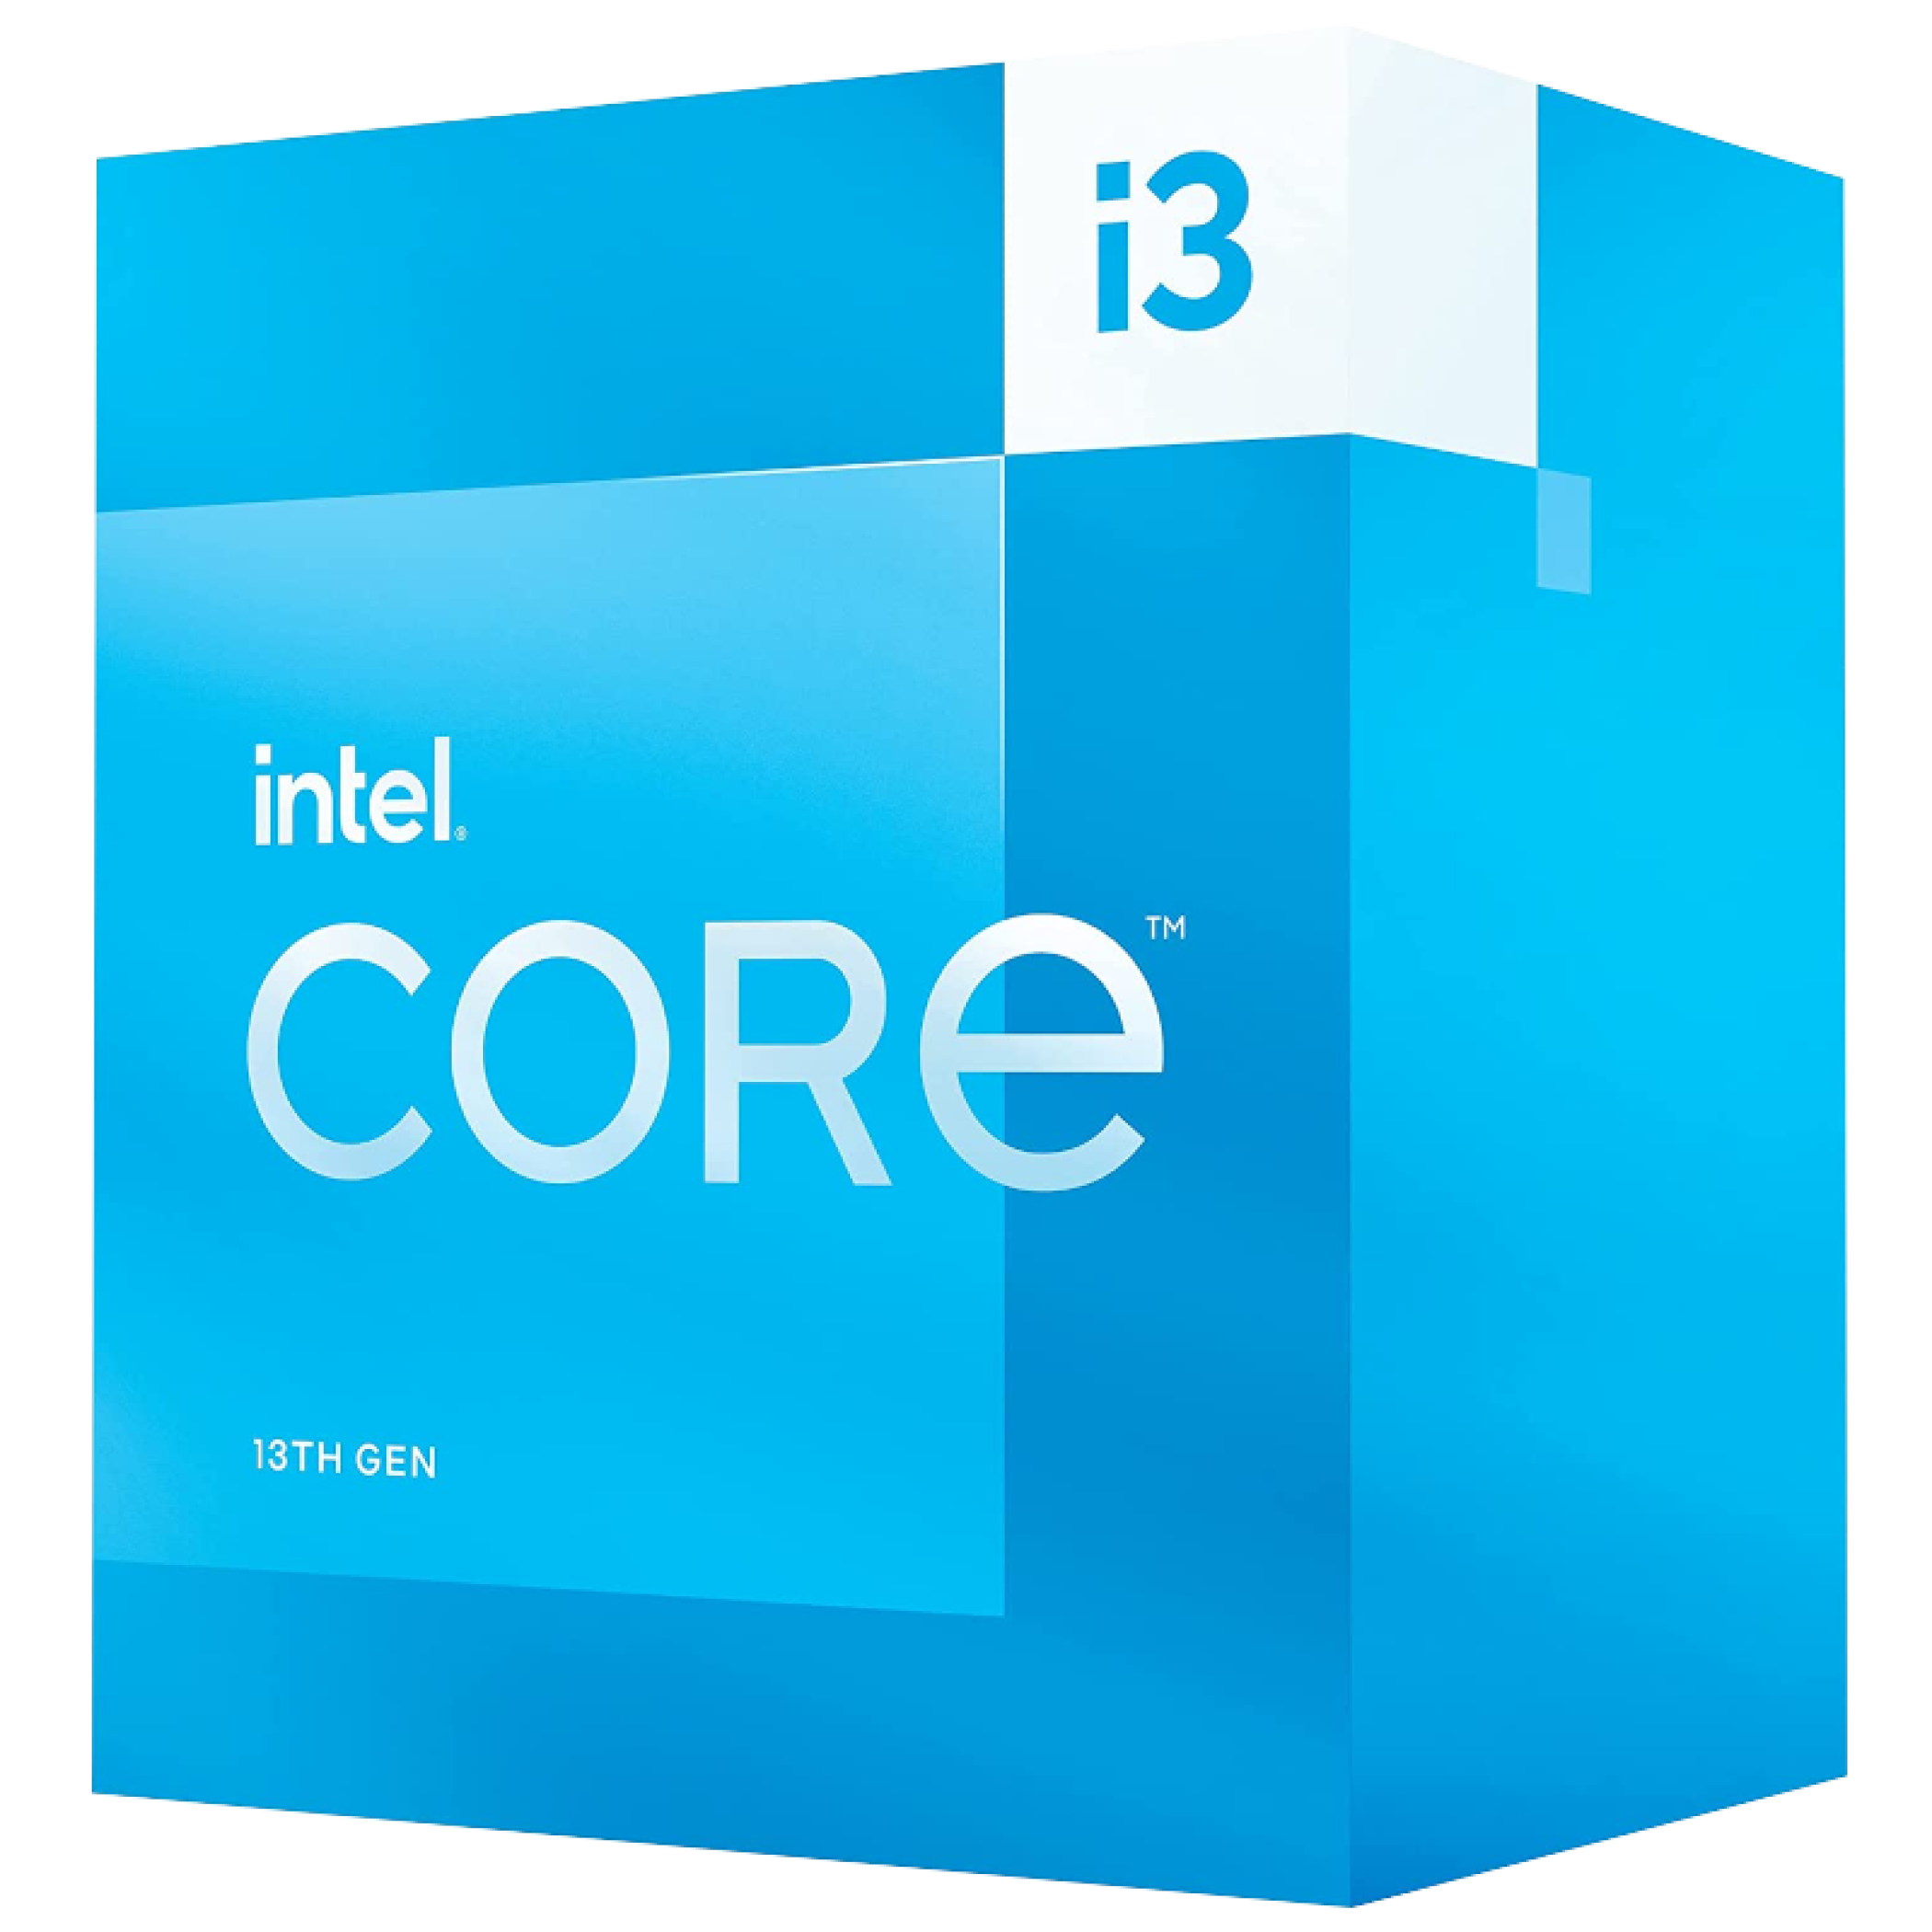 The box for a 13th-Gen Intel Core i3 CPU.